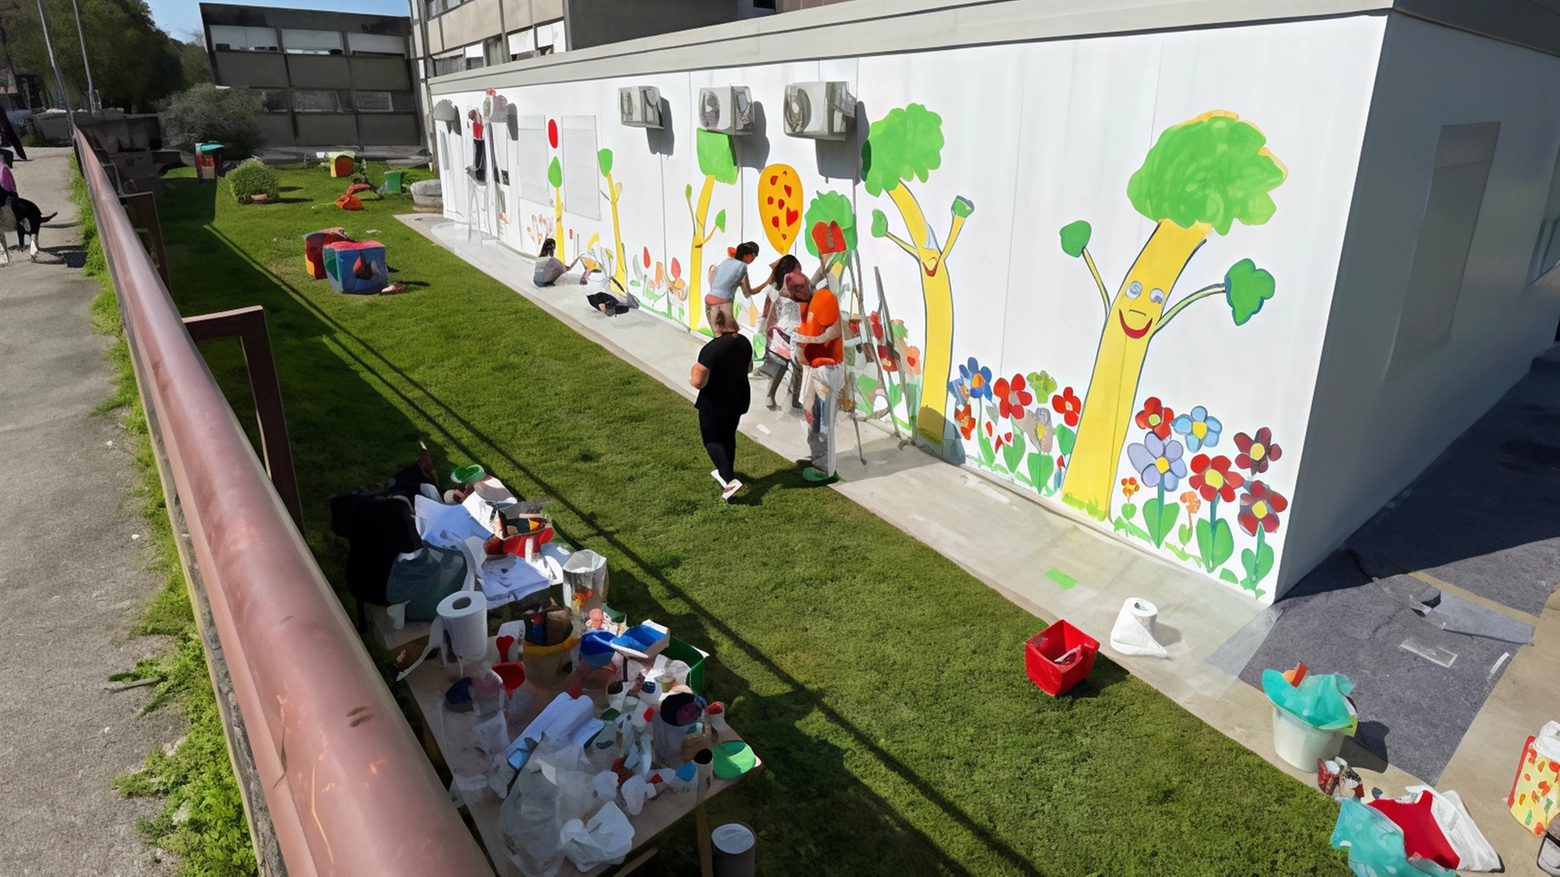 Gregorio Mancino, noto come Greg, insieme ai bambini e volontari, dipinge un murale allegro sul prefabbricato dell'asilo Tagliabue a Villasanta, coinvolgendo la comunità scolastica.